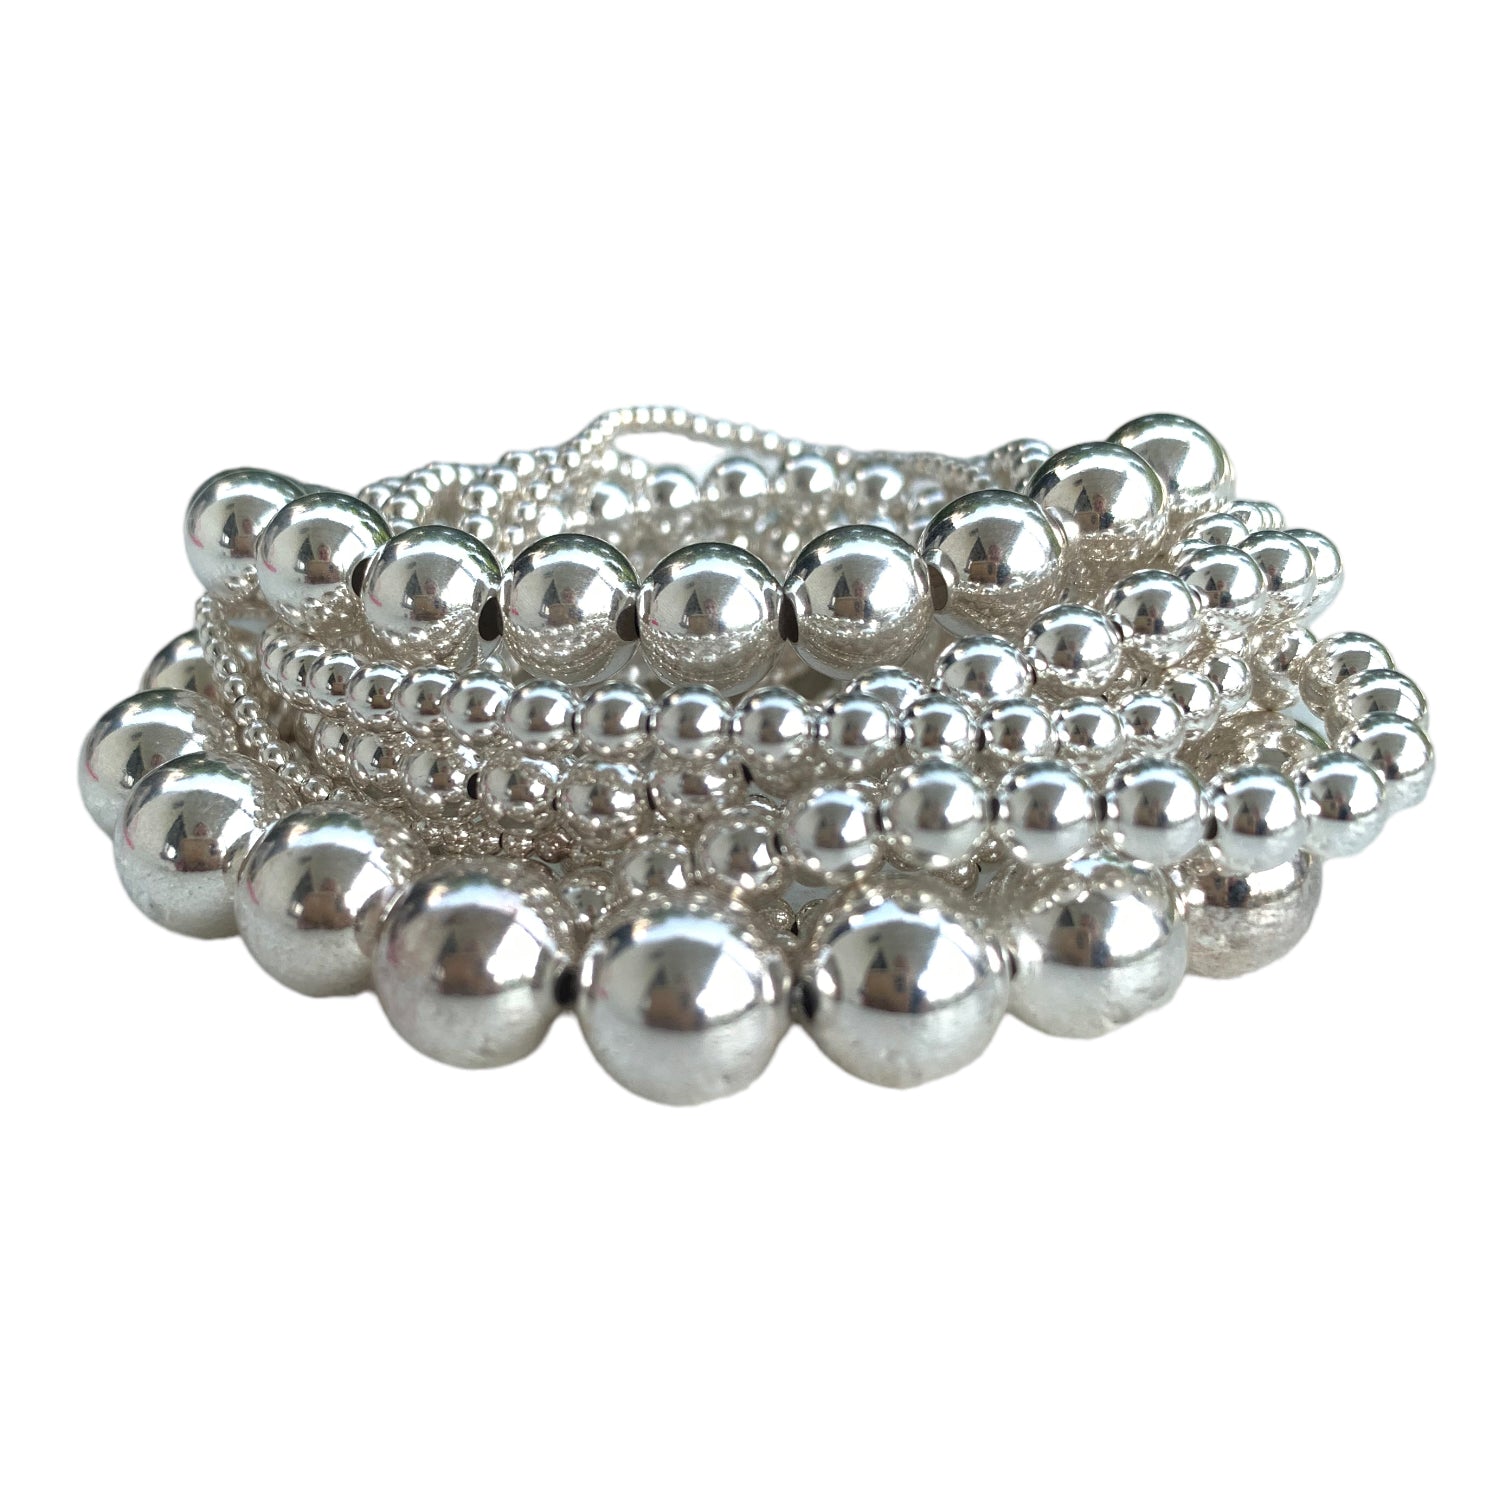 3mm Tiny Blessings Beads, Baby/Children's Beaded Bracelet for Girls - Sterling Silver